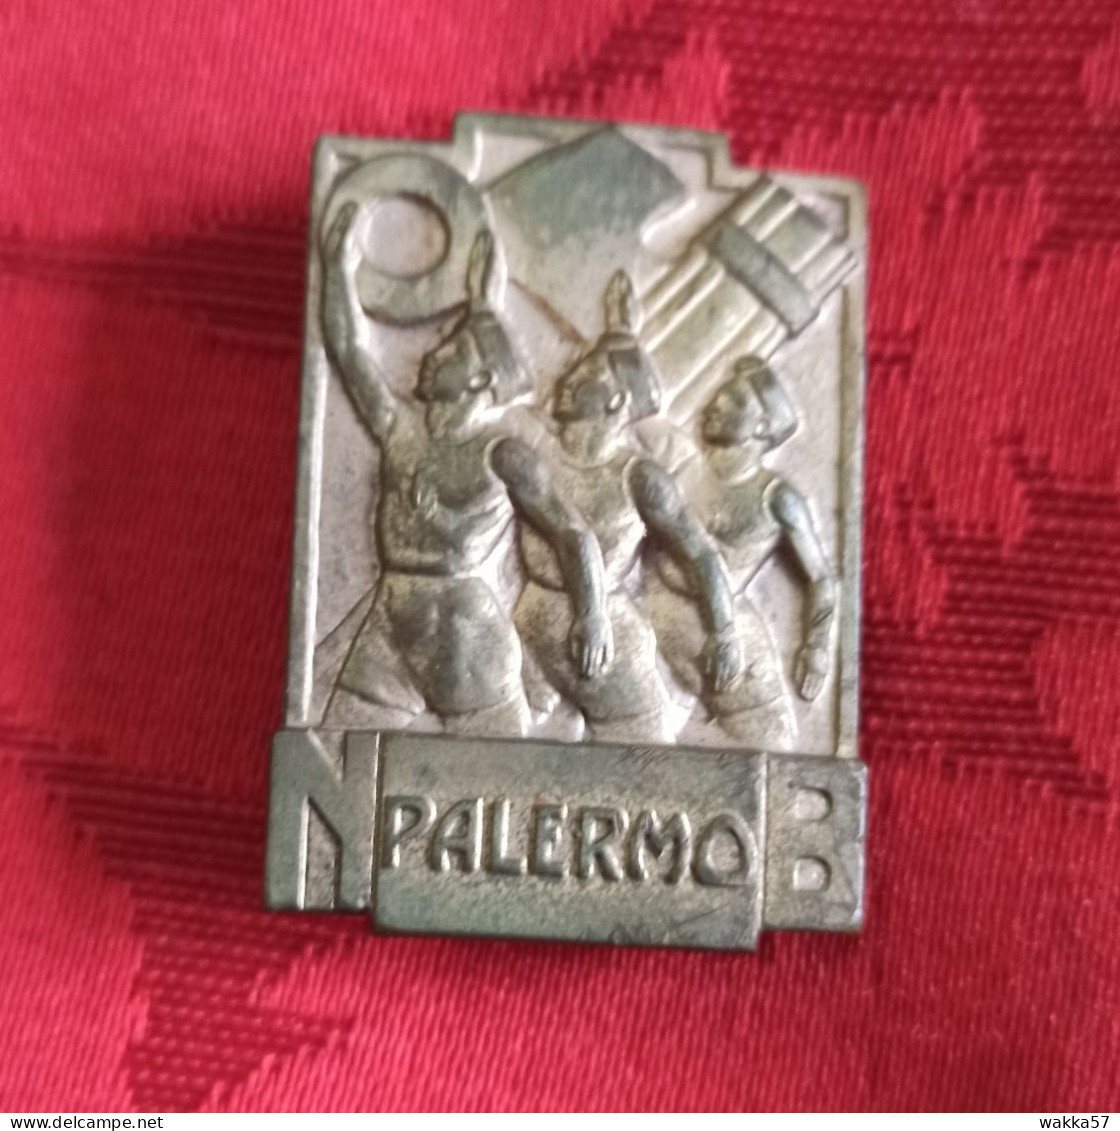 Distintivo Spilla ONB Palermo - Opera Nazionale Balilla - Mortillaro - Armee